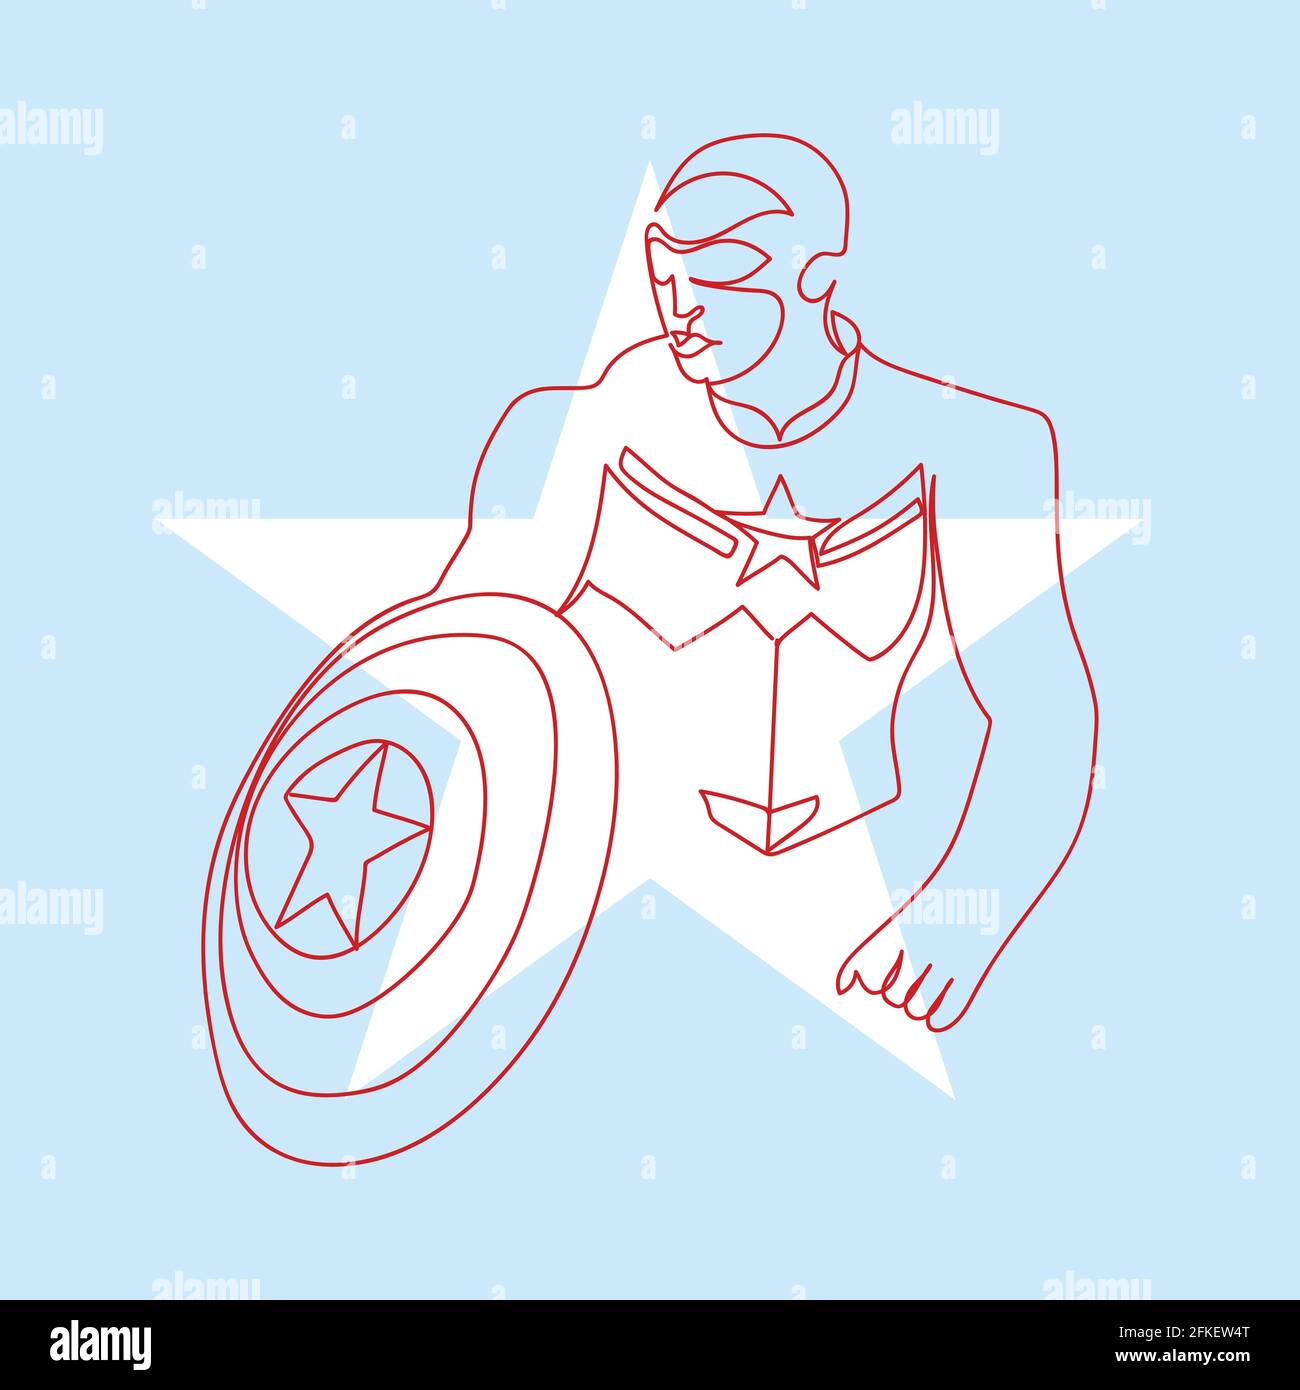 Figure dessin d'une ligne du super-héros qui brandit un bouclier. Illustration simple minimaliste dessinée à la main avec silhouette d'étoile et fond bleu clair. Illustration de Vecteur